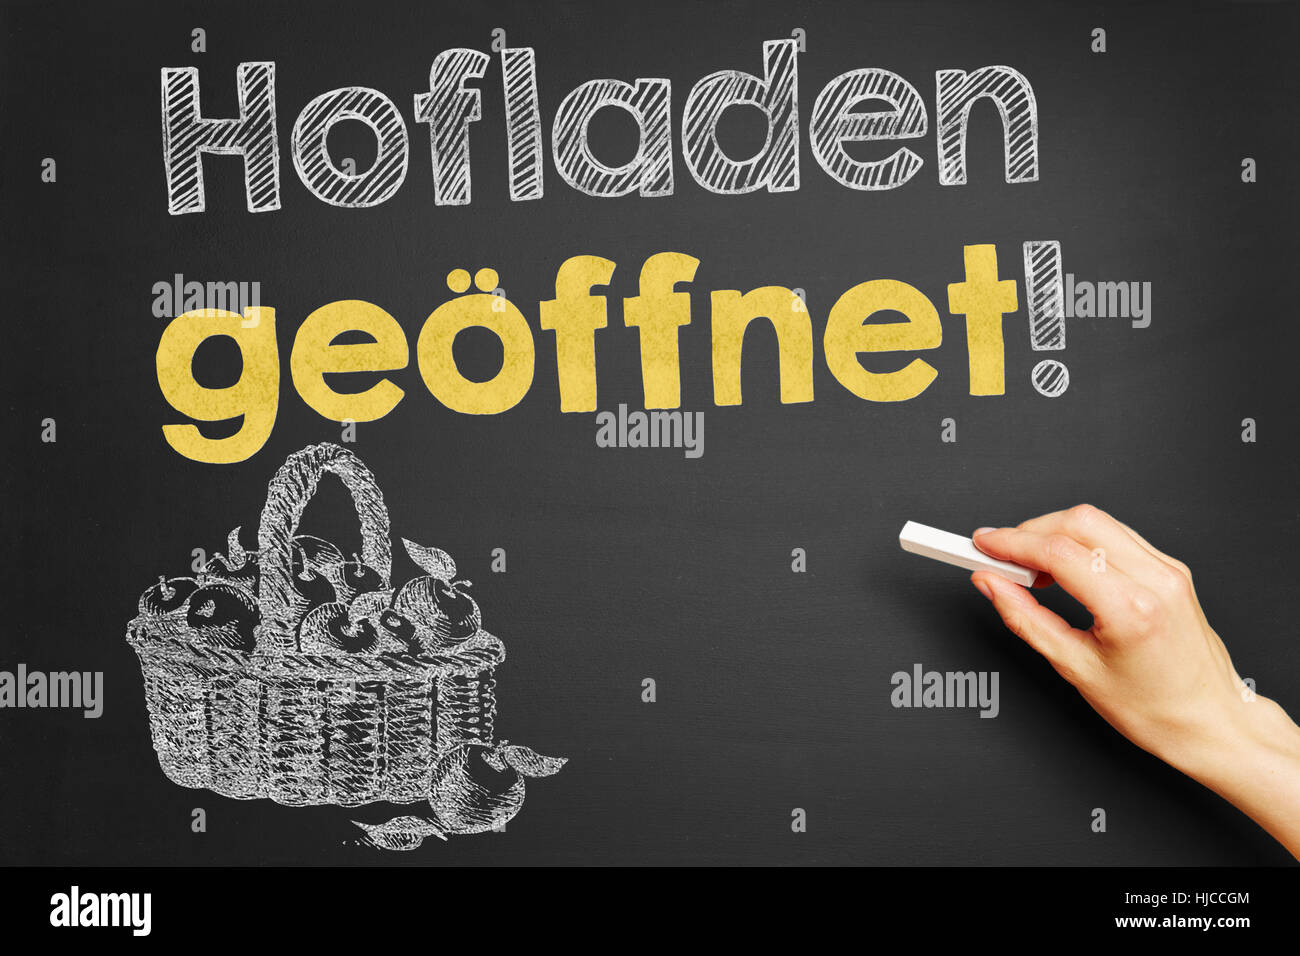 Hand writes in German "Hofladen geoeffnet!" (Farm shop open!) on blackboard Stock Photo